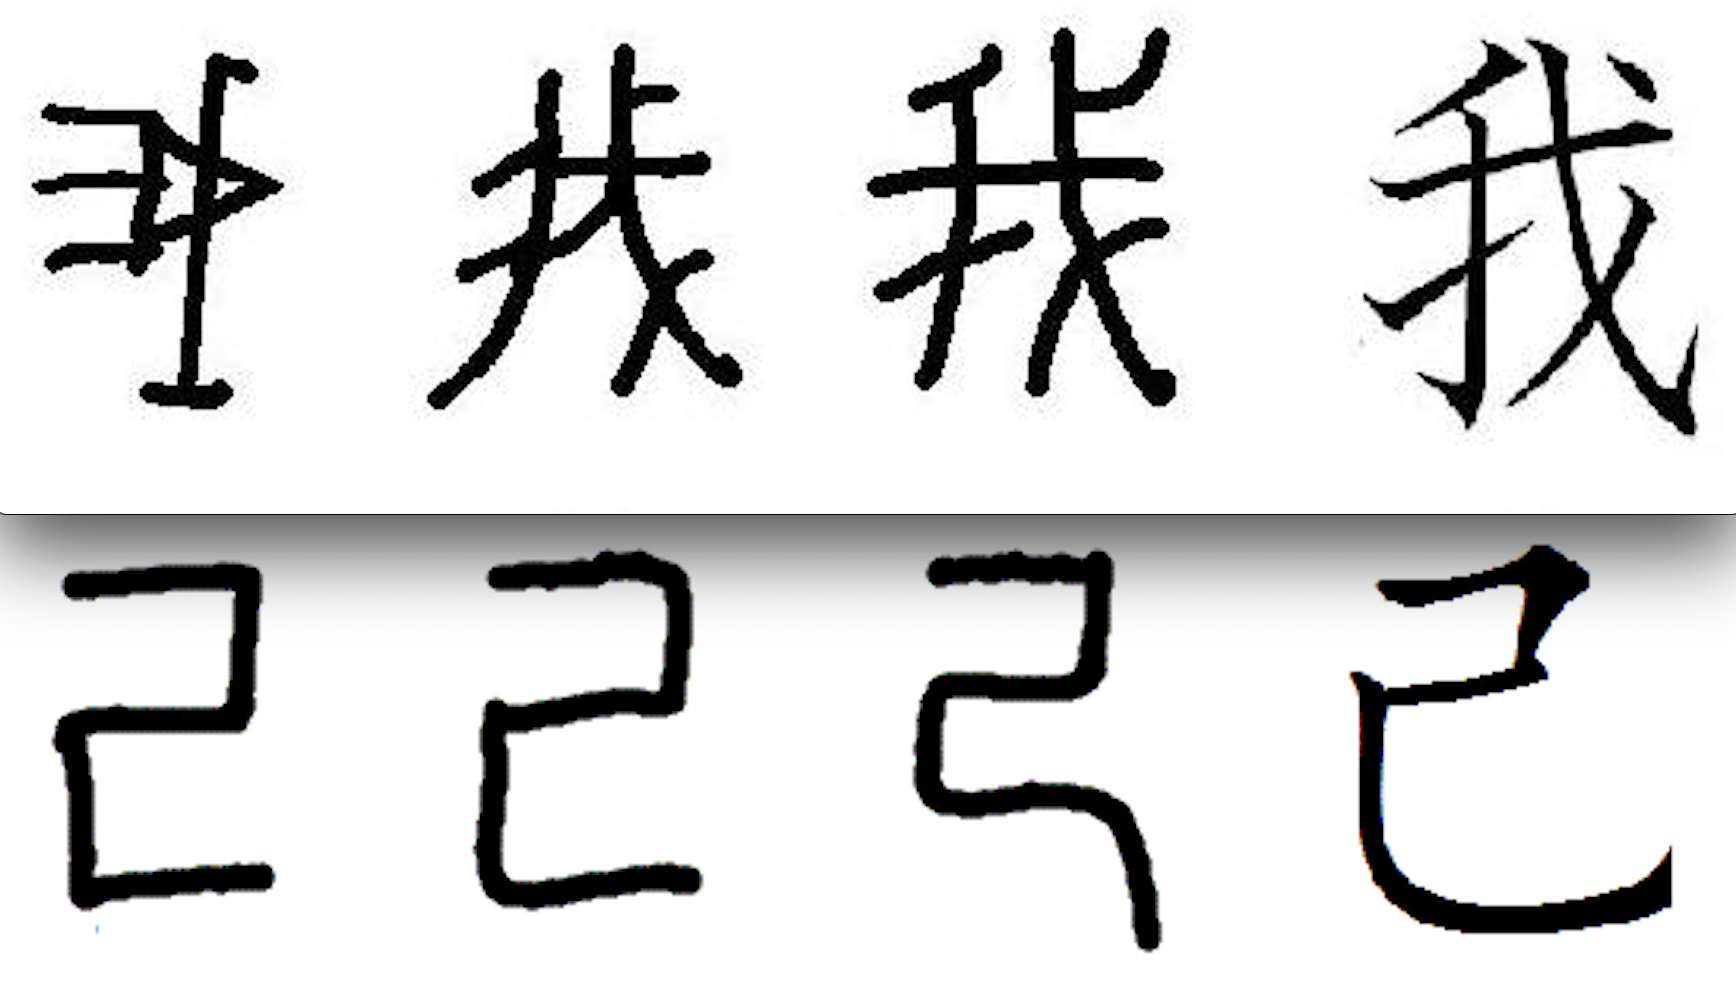 〝自分〟を意味する漢字になぜ「我」と「己」があるのか（つぶやき考現学　No.81）